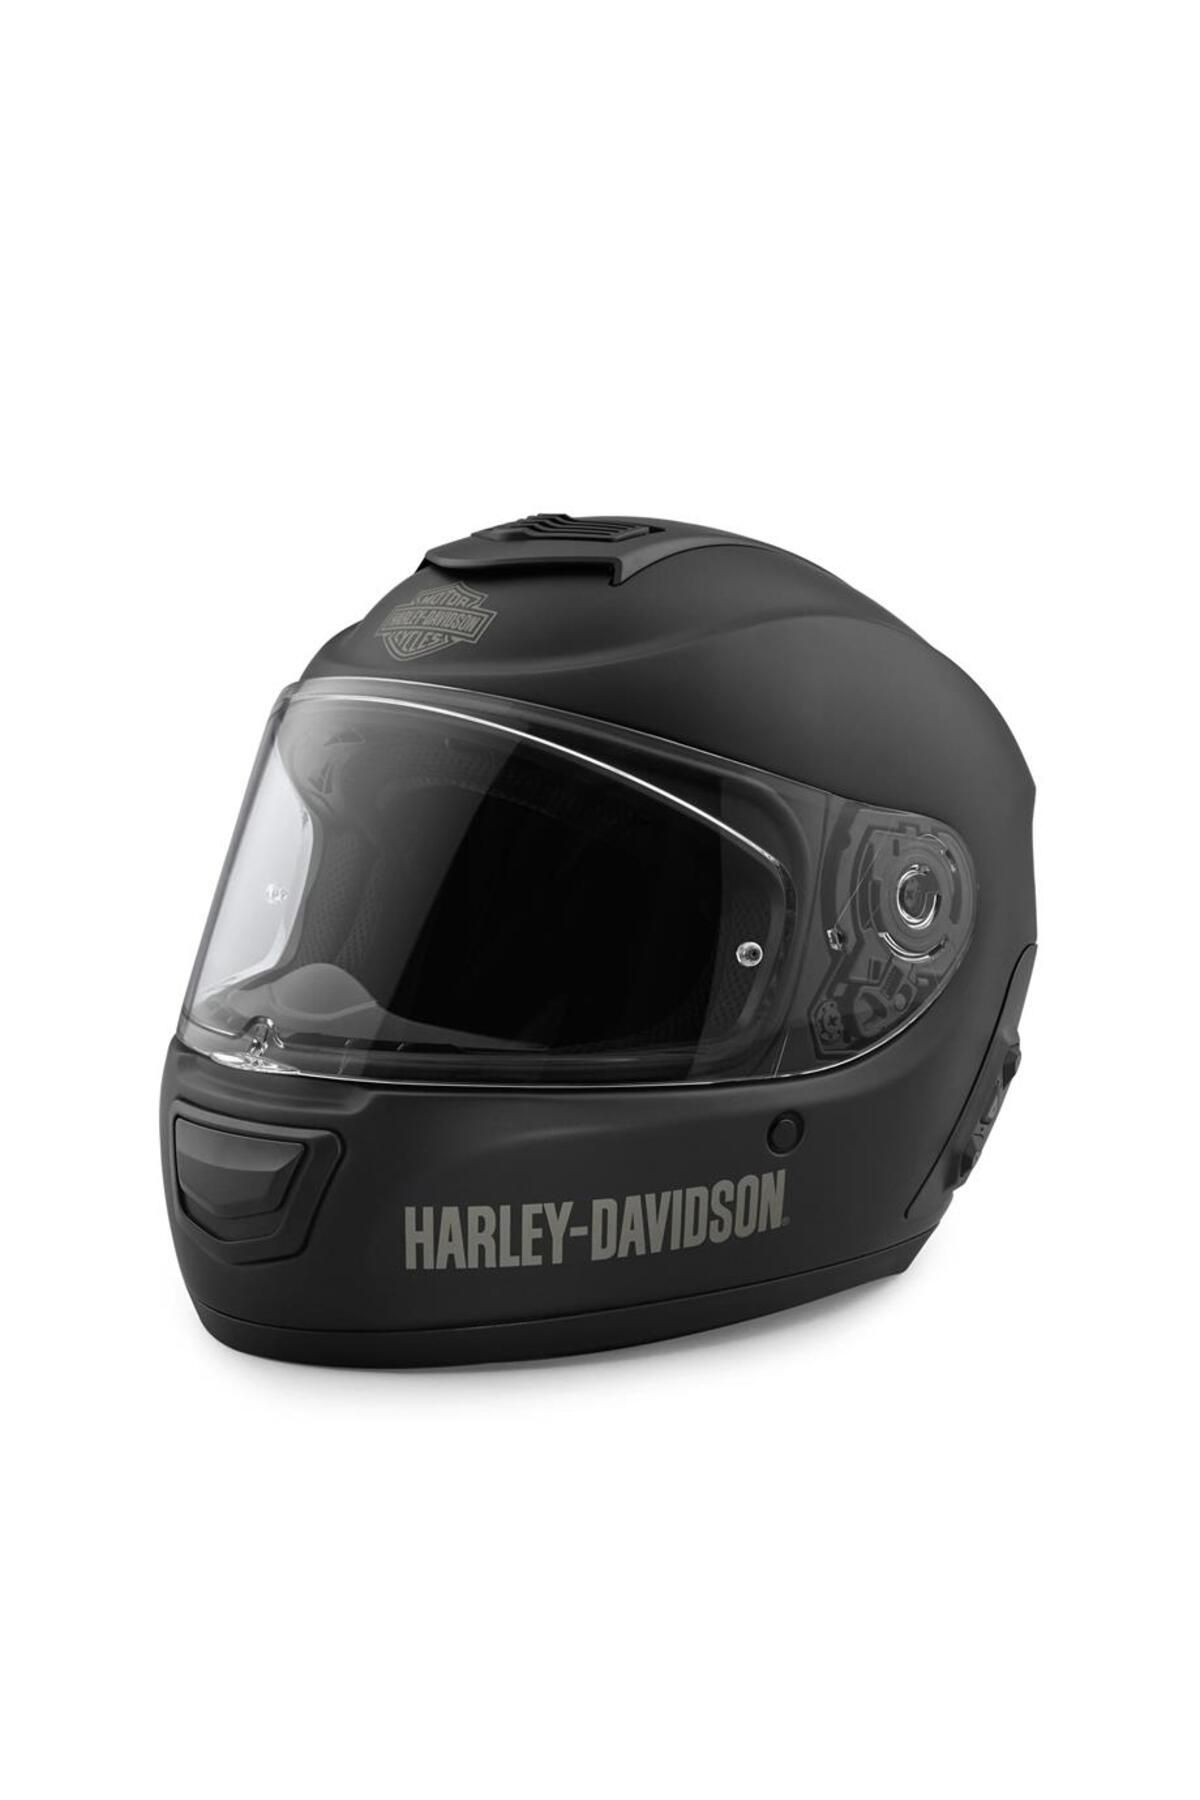 Harley Davidson Harley-Davidson Boom! Audio N02 Full-Face Motosiklet Kask